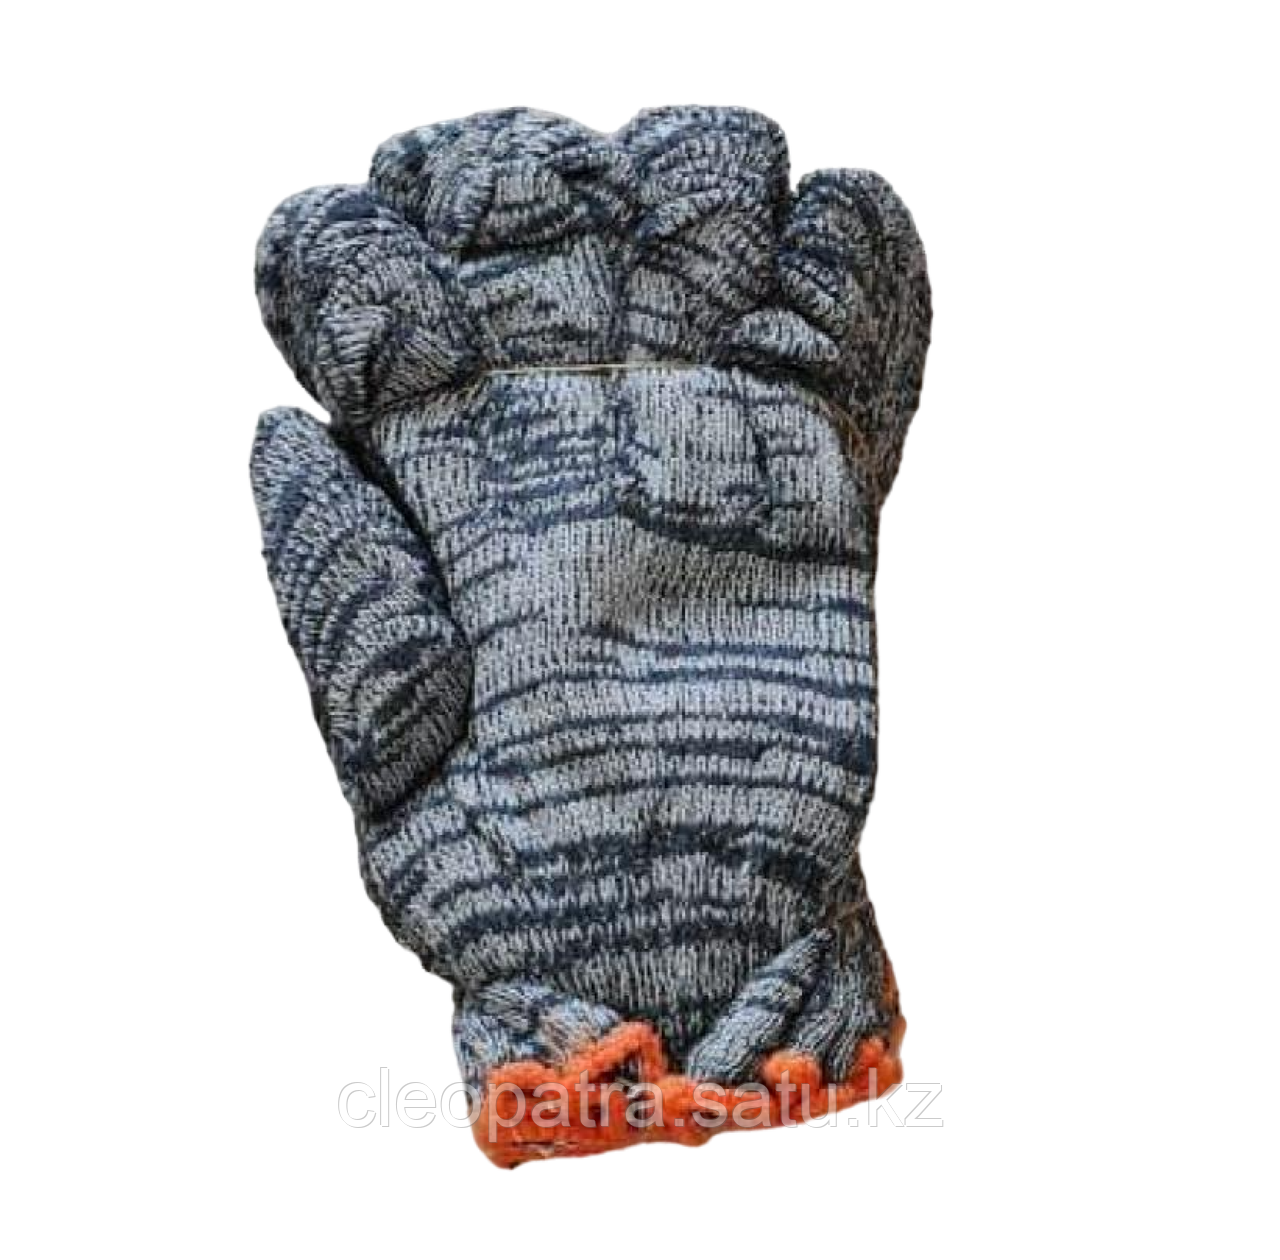 Серые перчатки